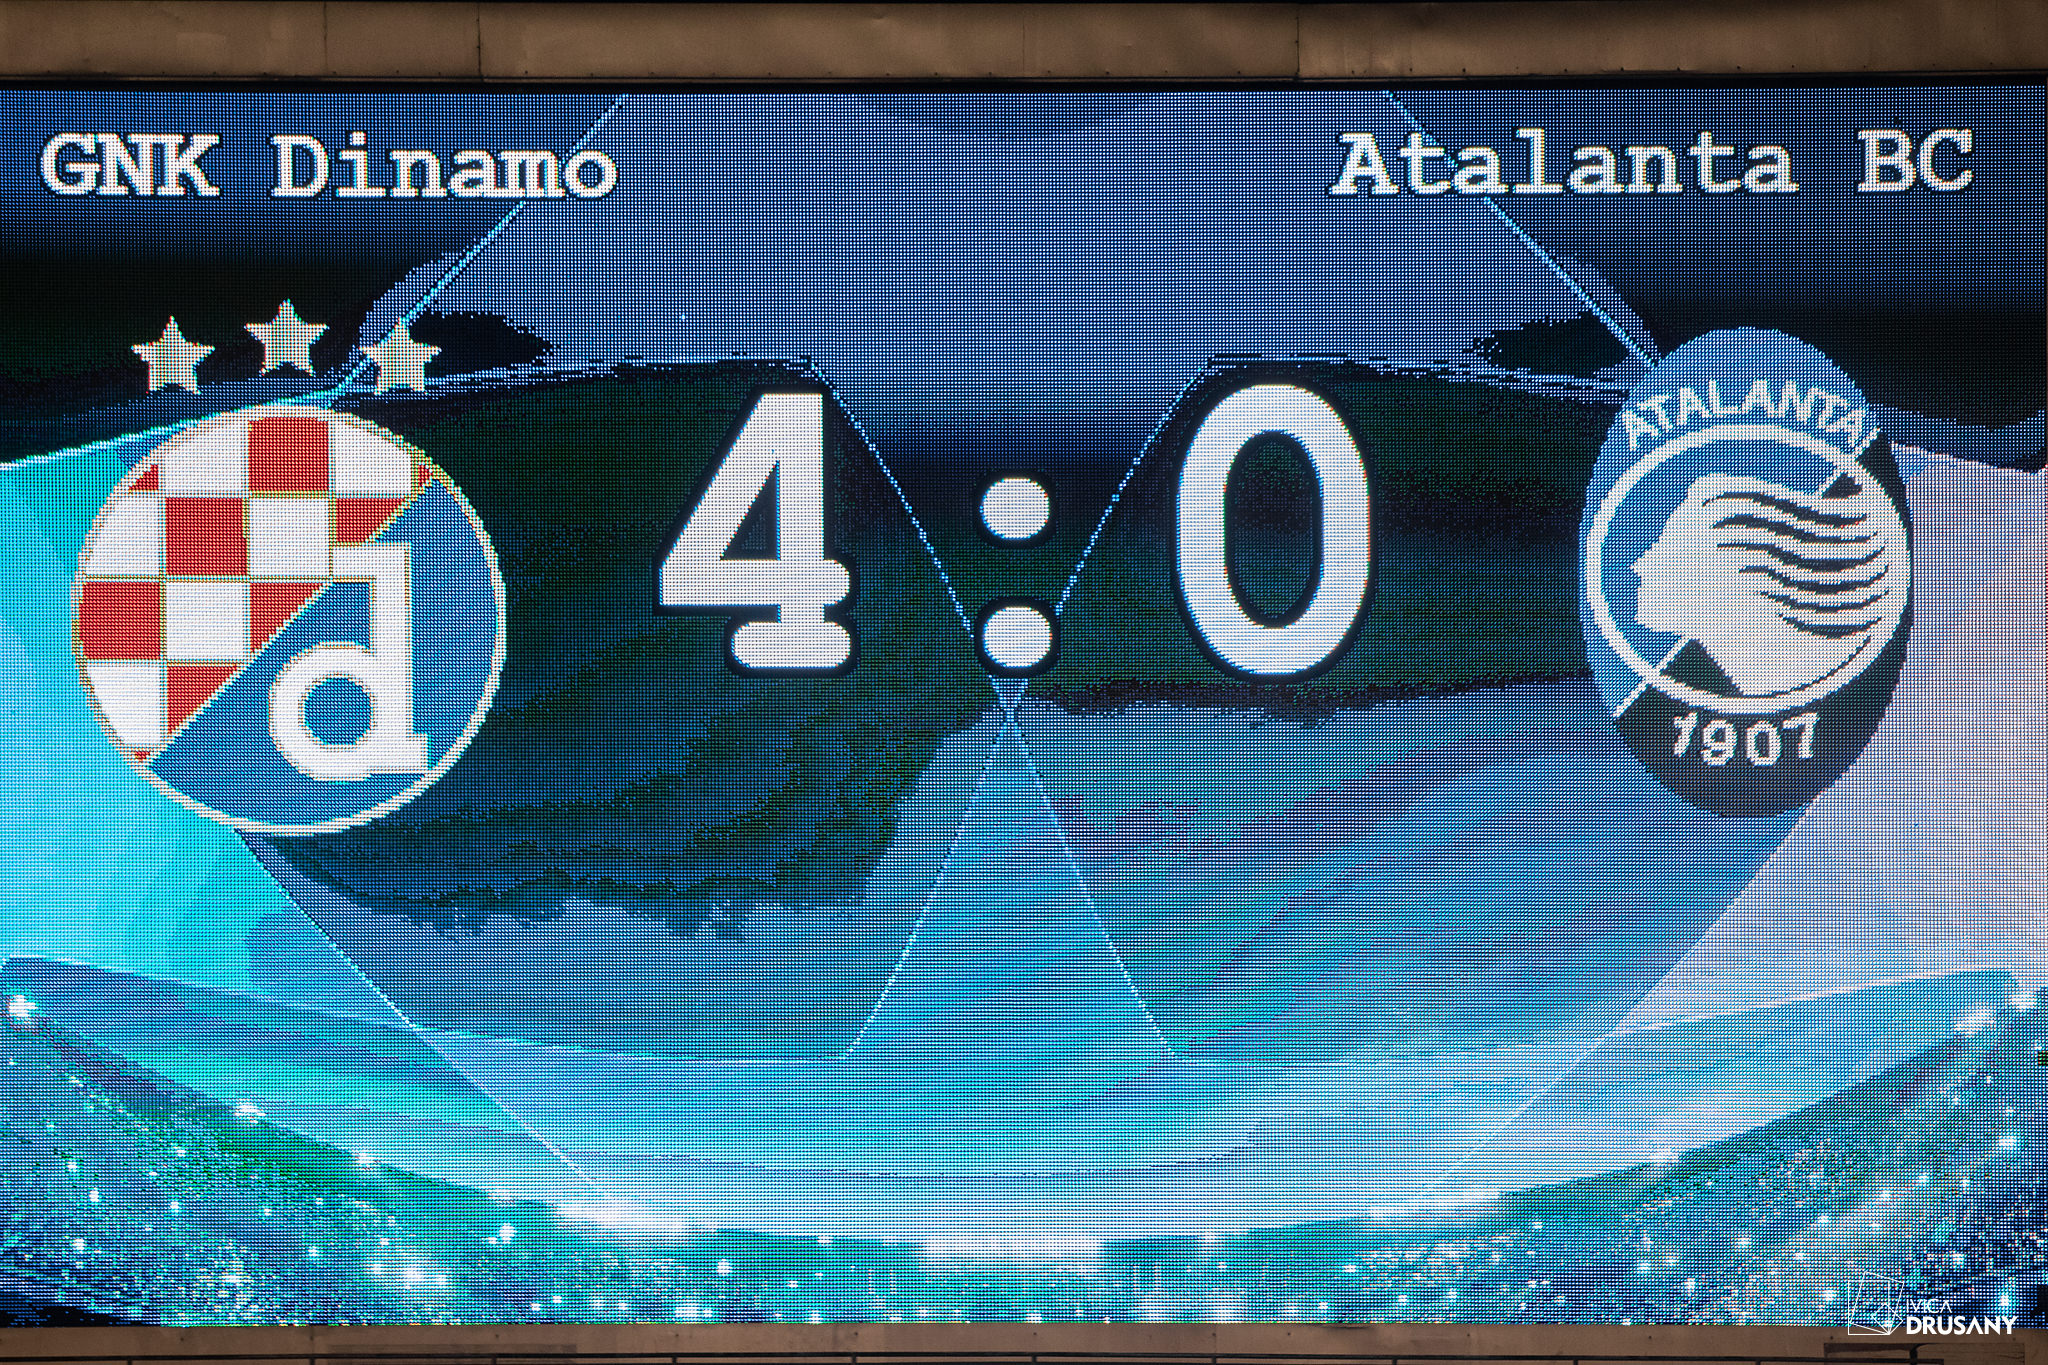 UEFA Champions League, Group C - Matchday 1. GNK Dinamo VS Atalanta BC. / Ivica Drusany